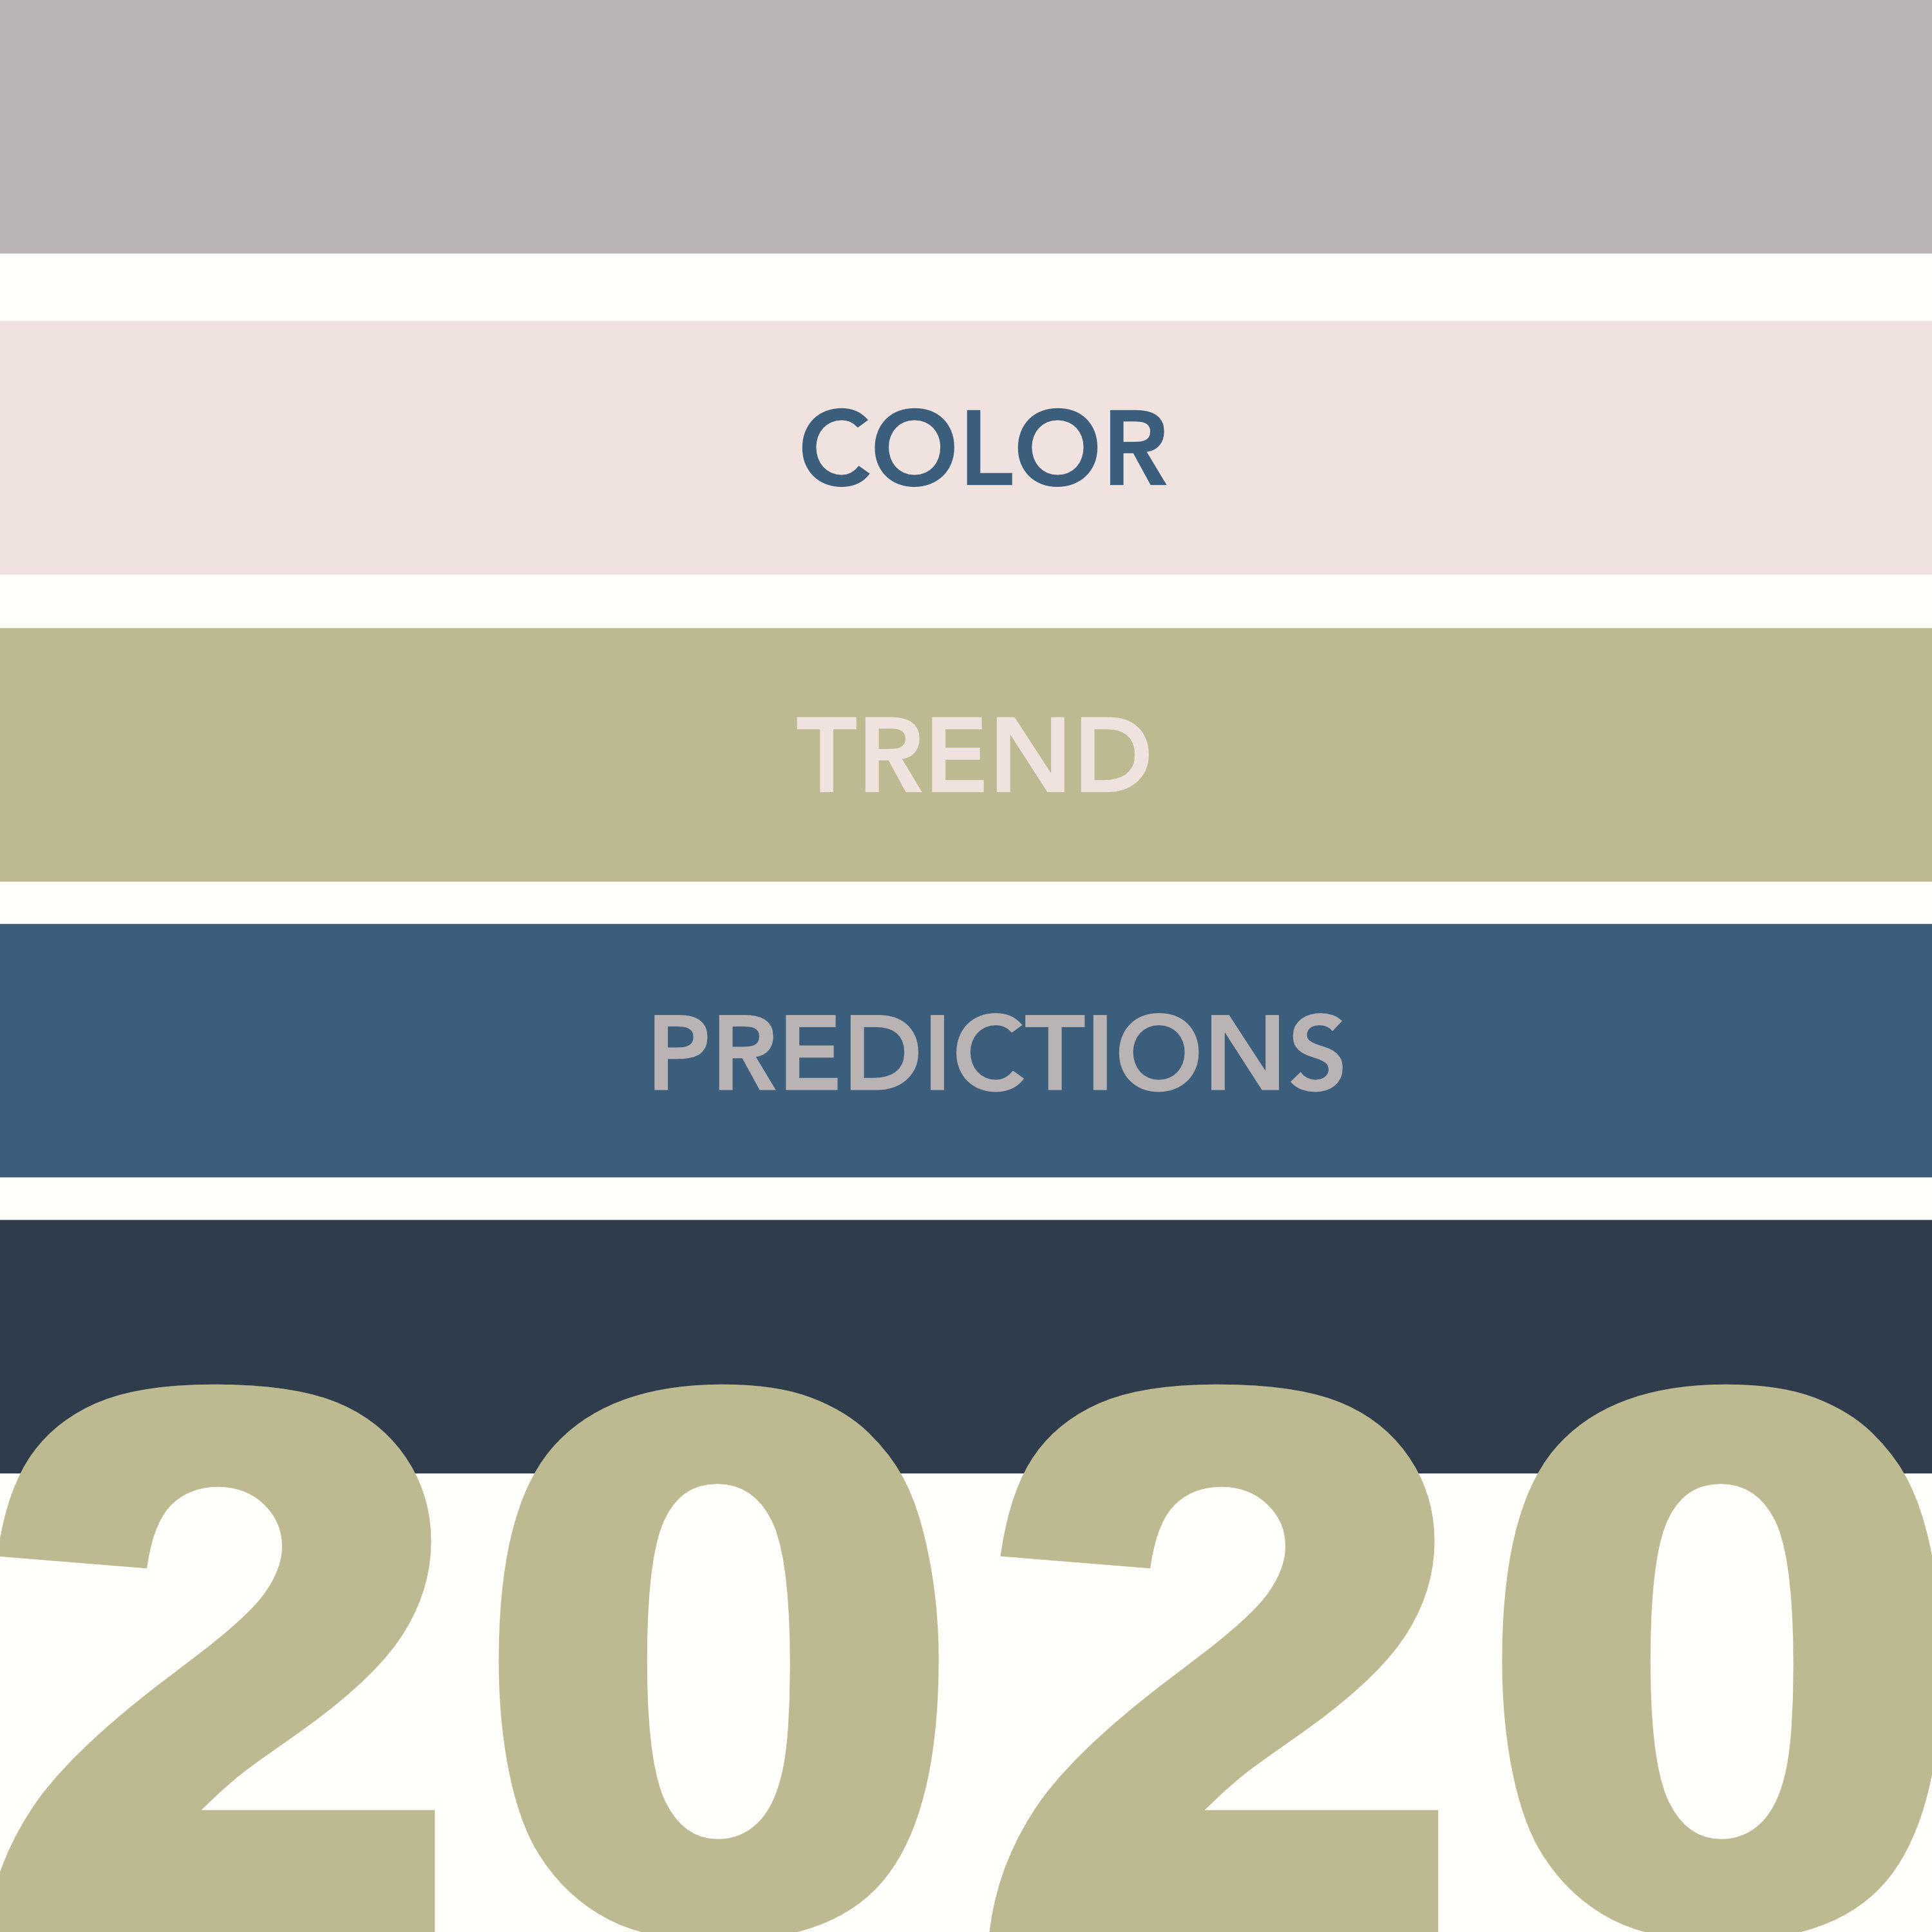 2010 год какой цвет. Модный цвет 2020 года. Цвет года 2020. Цвет 2023 года пантон. Модные цвета в лого.